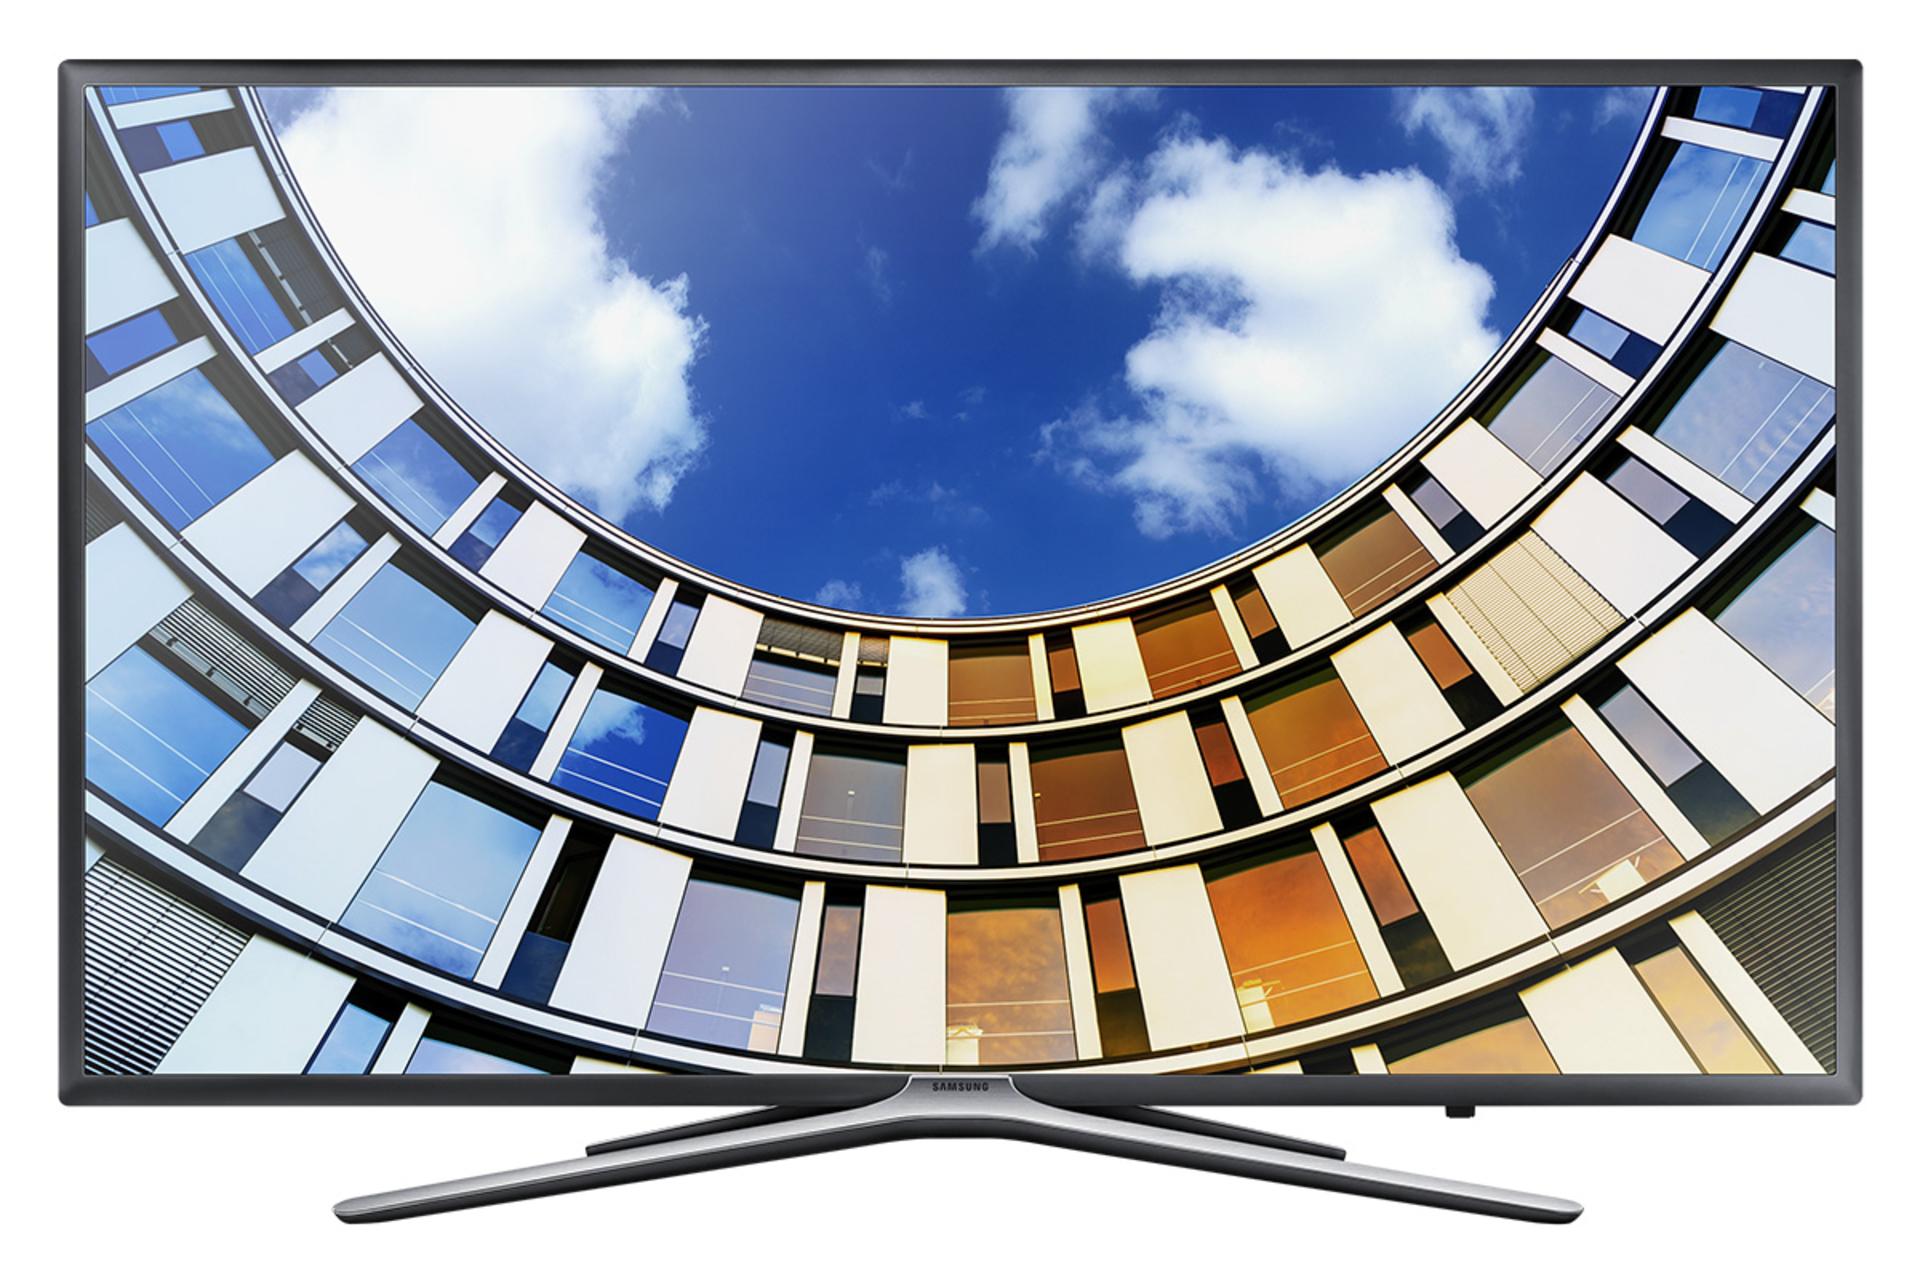 نمای جلو تلویزیون سامسونگ N6900 مدل 49 اینچ با صفحه روشن